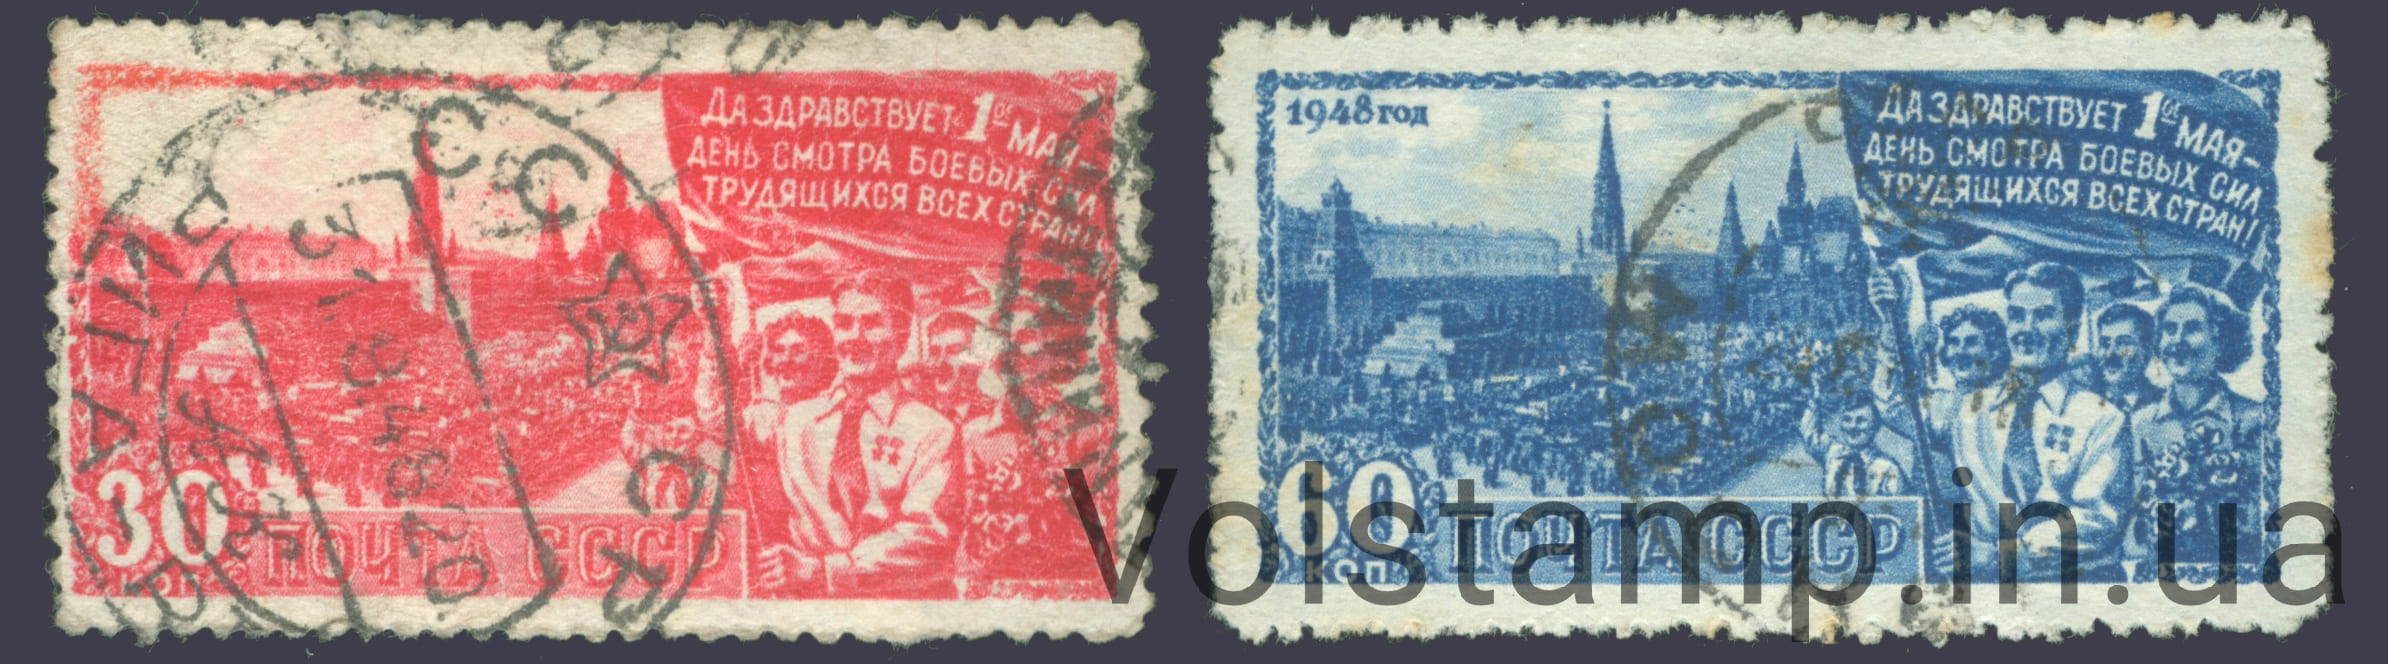 1948 серия марок День 1 мая - Гашеные №1166-1167